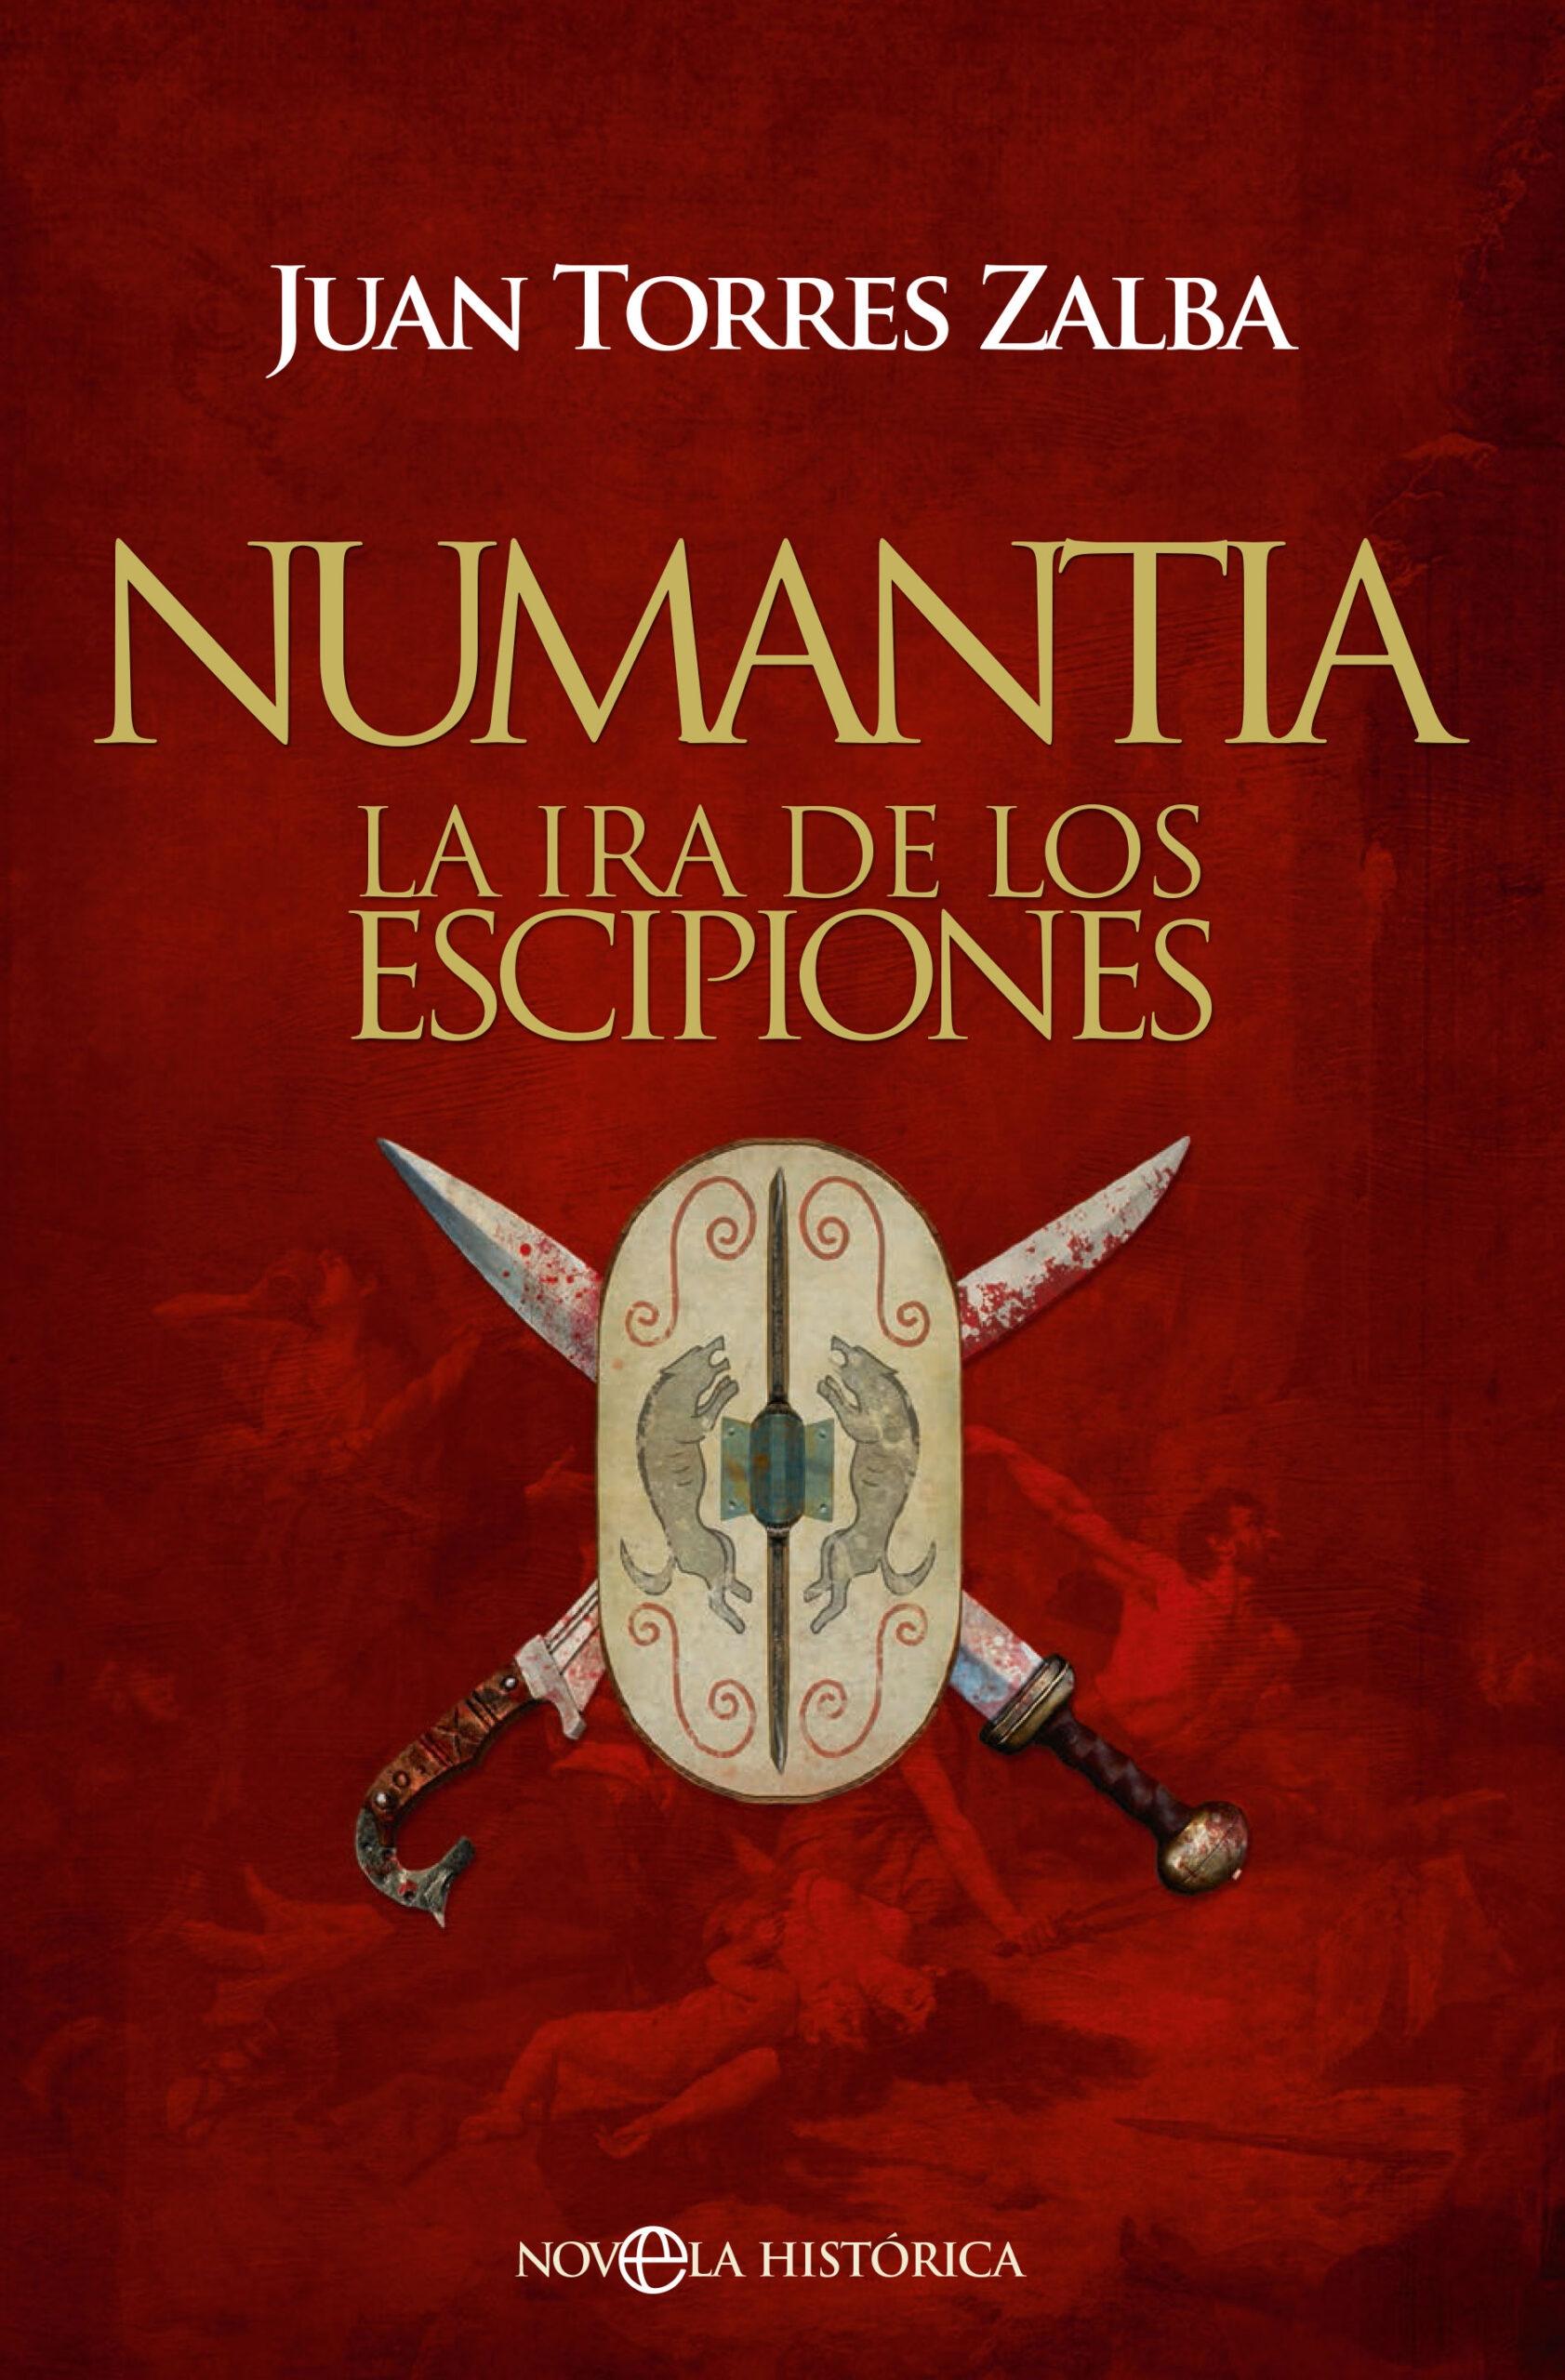 Numantia "La Ira de los Escipiones". 